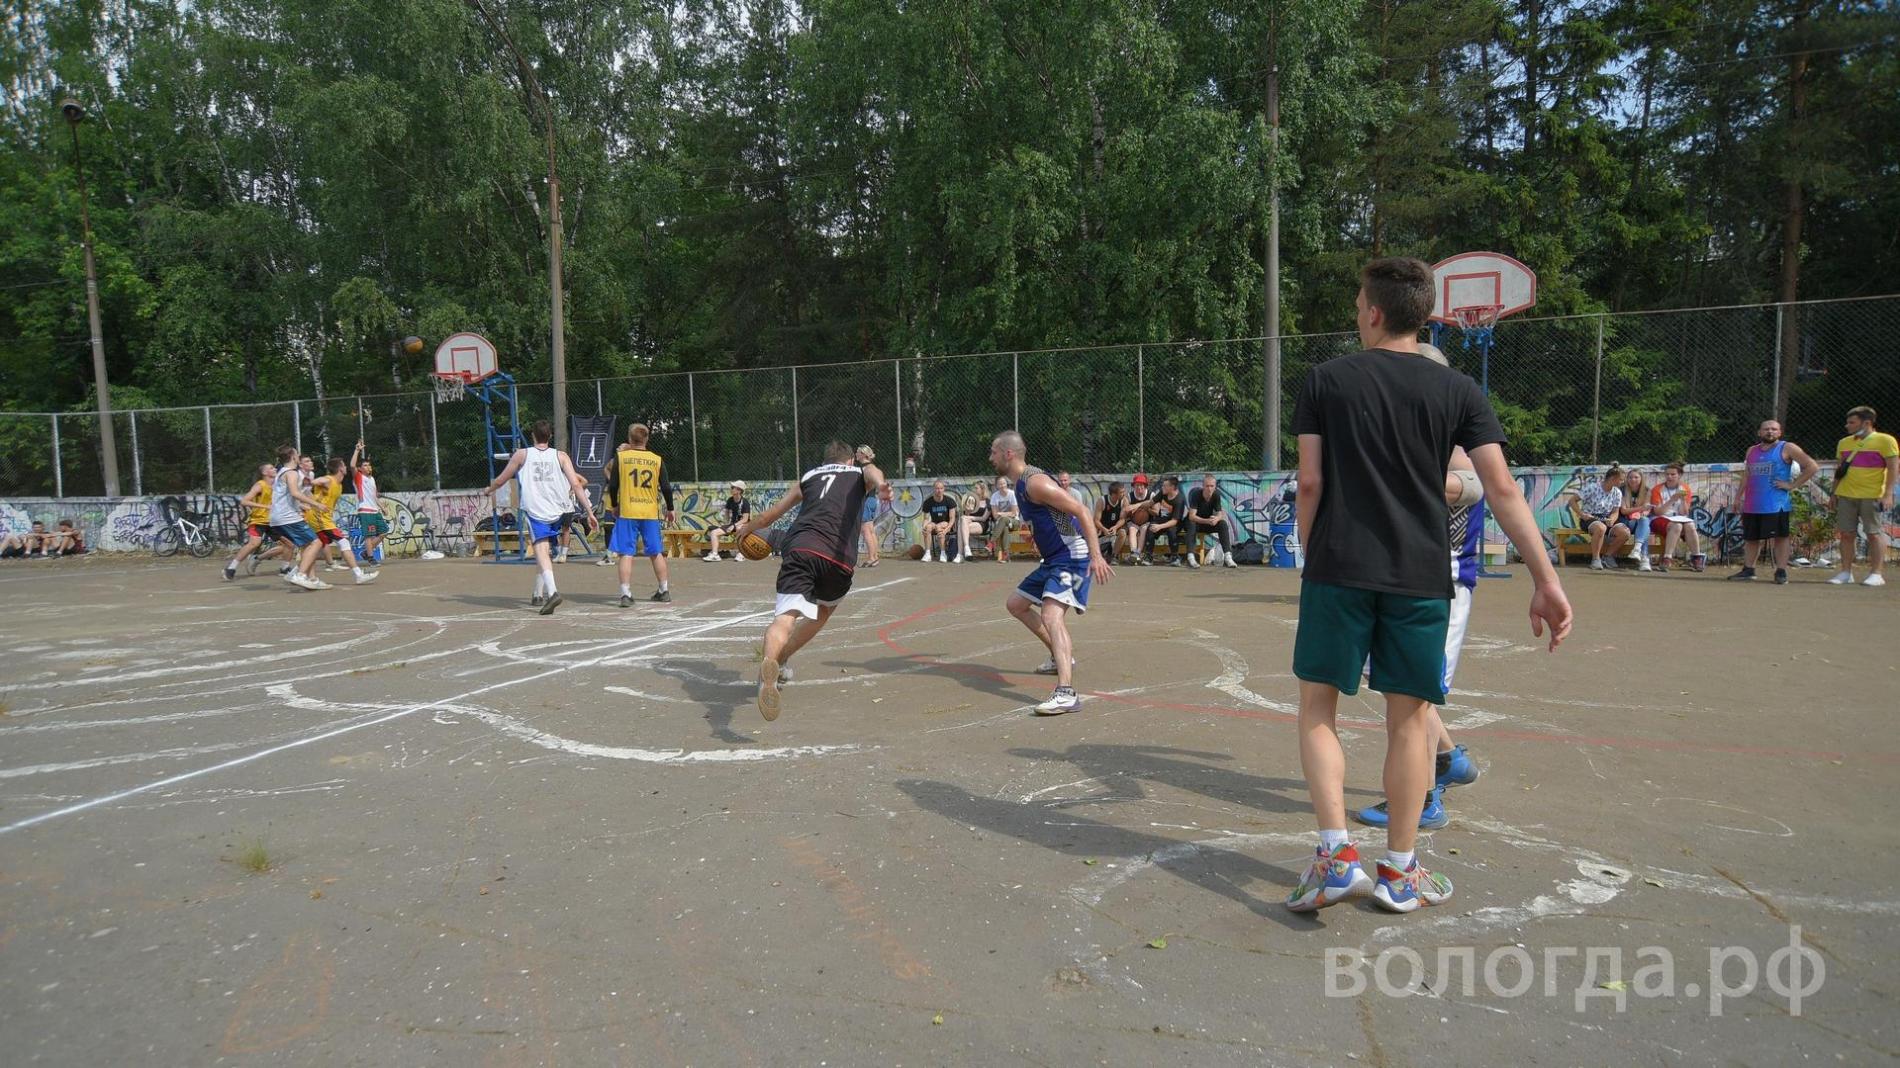 Порядка 400 спортсменов присоединились к фестивалю «Дыхание улиц» в Вологде